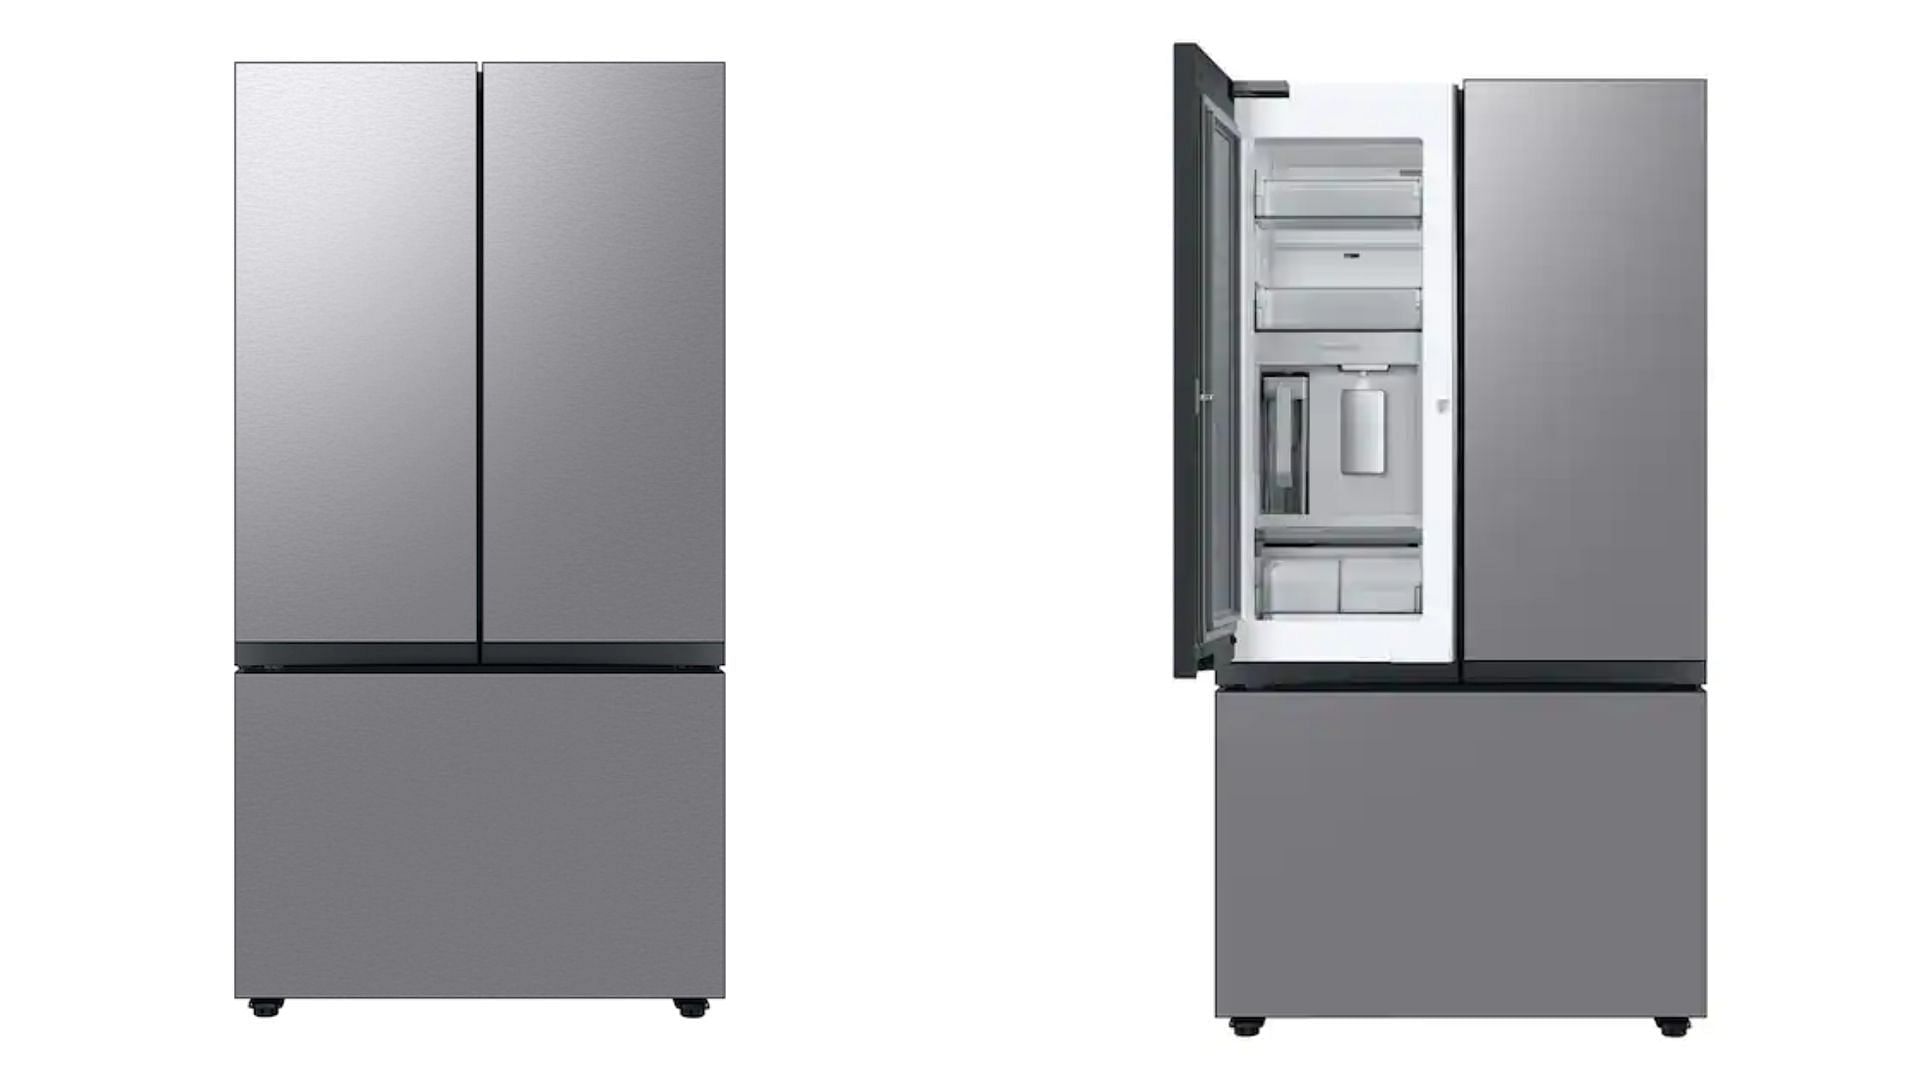 Samsung 30 cu. ft. Bespoke 3-Door French Door Refrigerator (Image via Samsung)